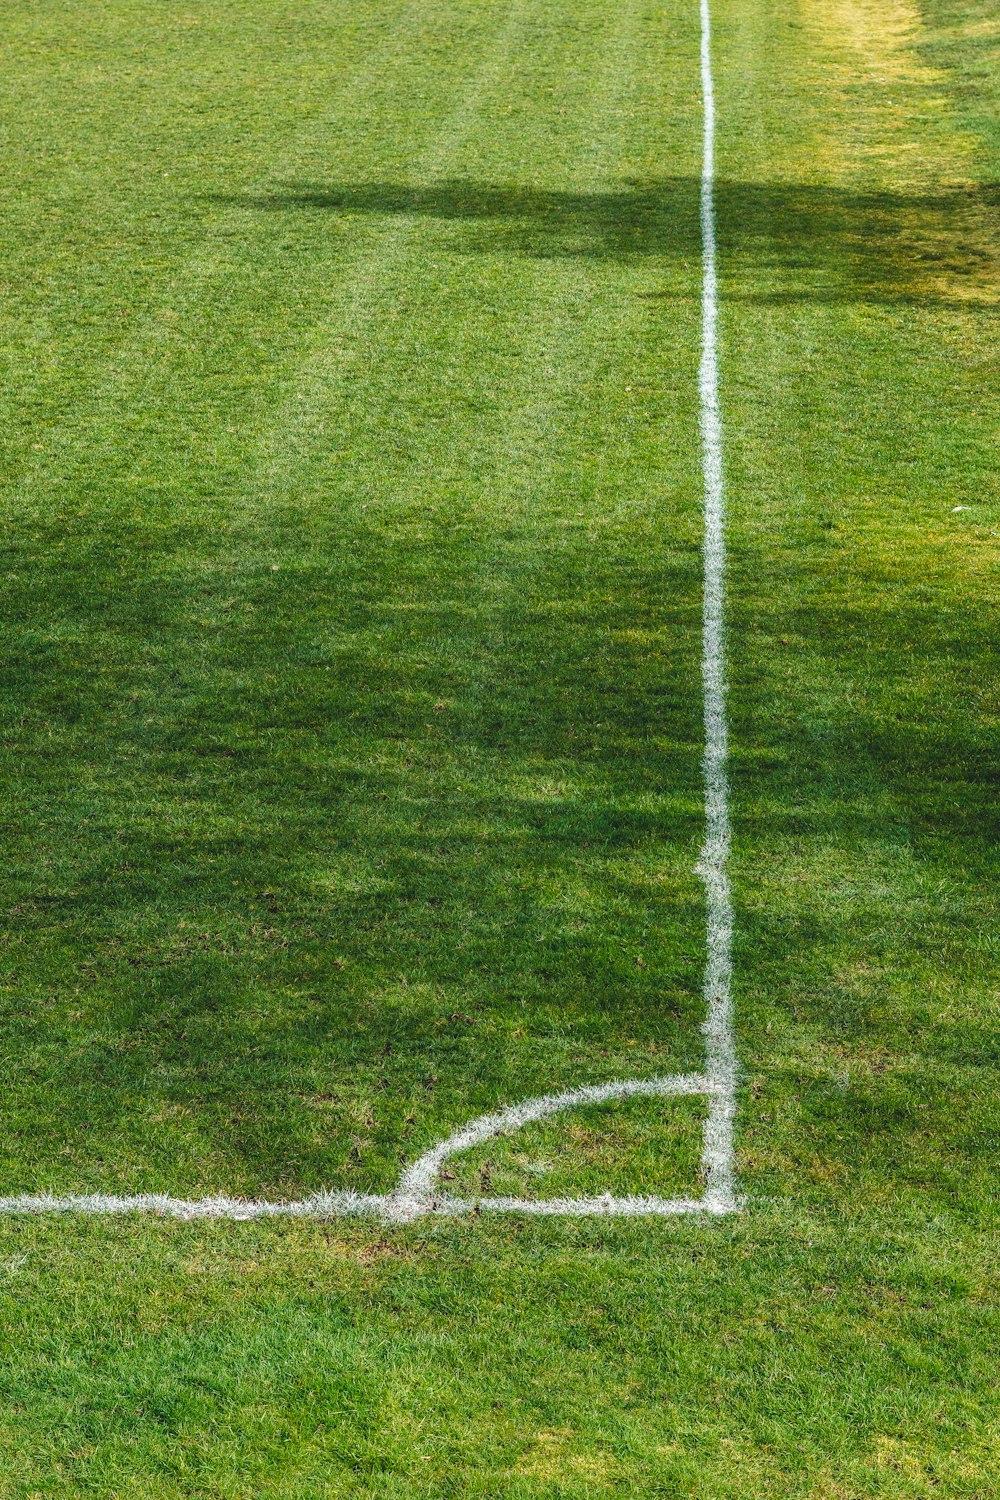 white soccer goal net on green grass field